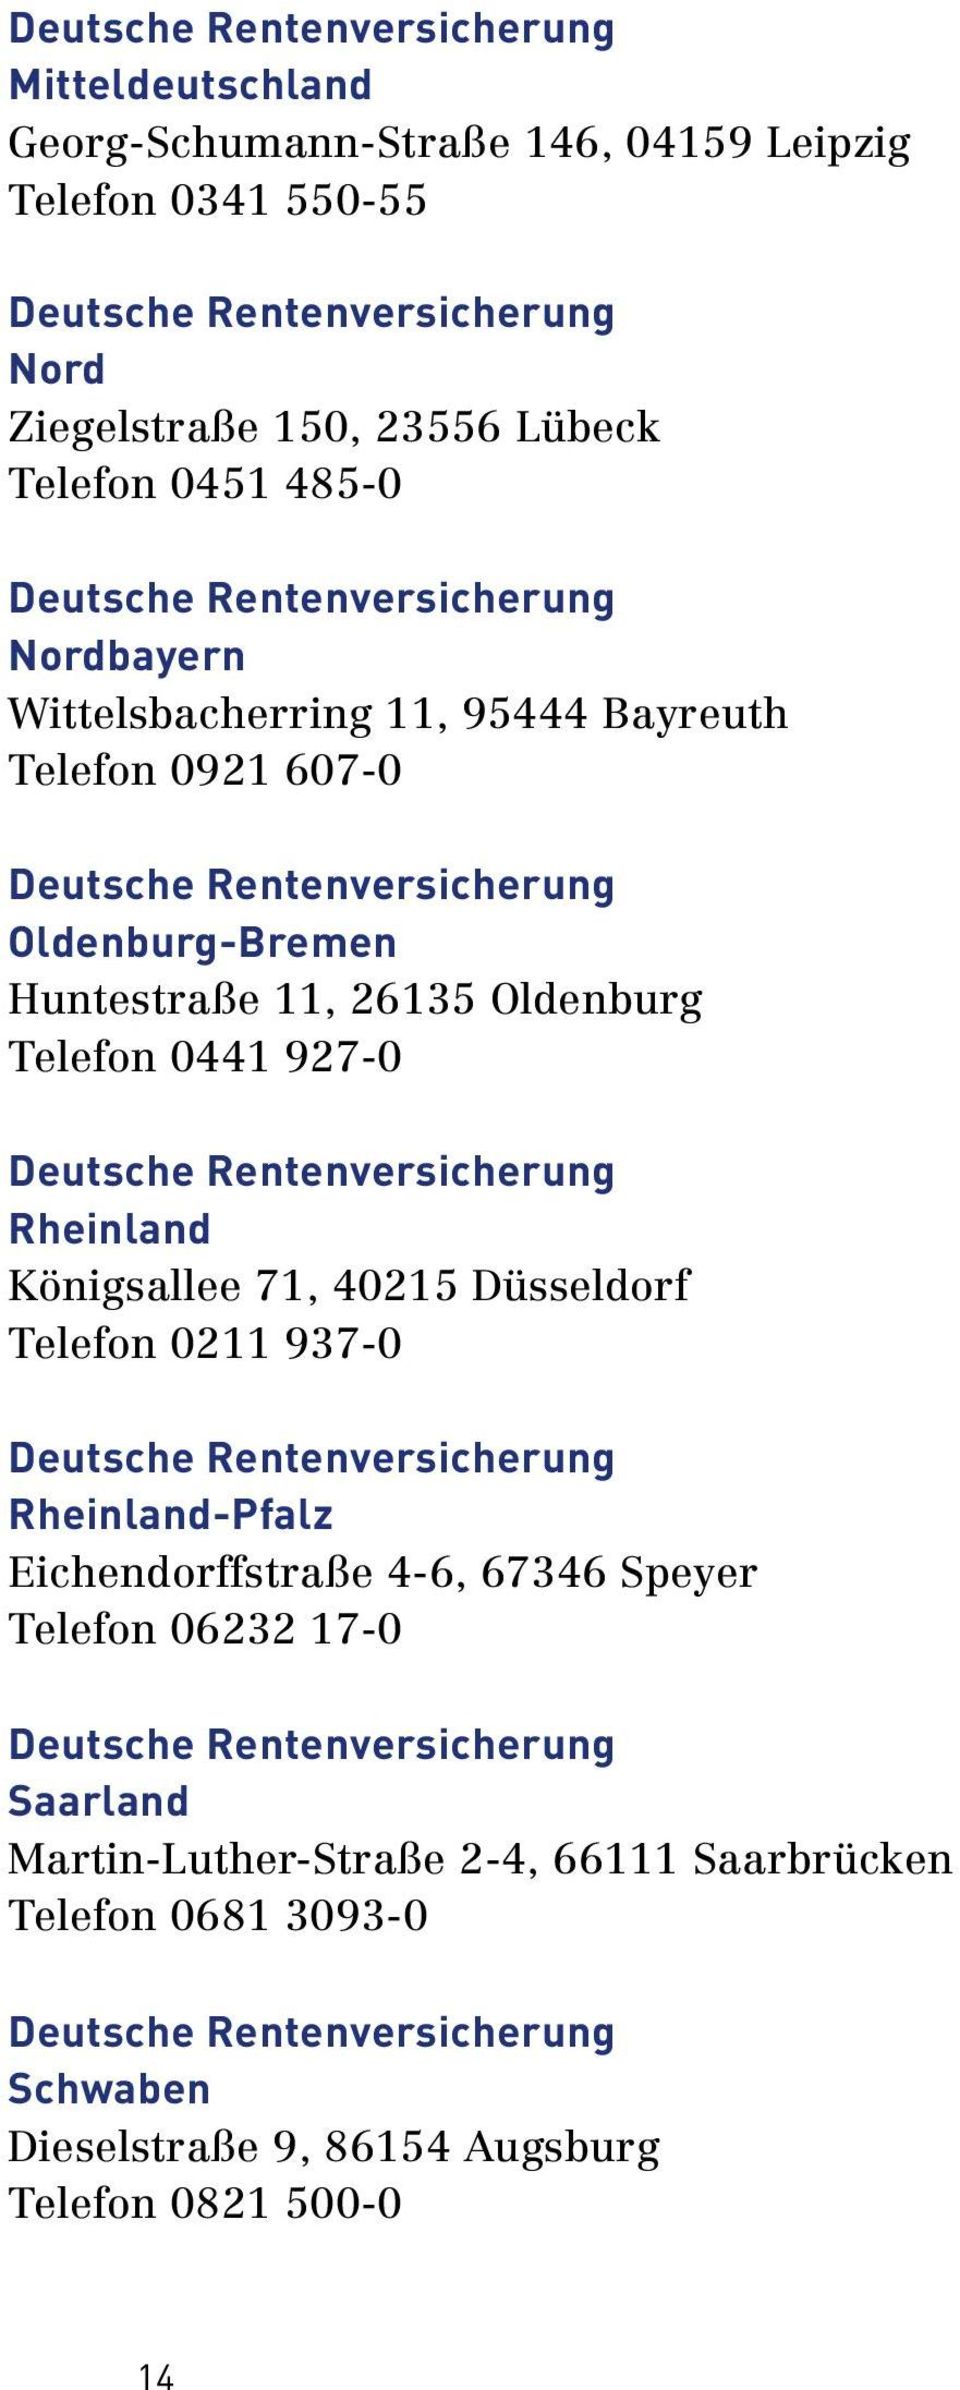 927-0 Rheinland Königsallee 71, 40215 Düsseldorf Telefon 0211 937-0 Rheinland Pfalz Eichendorffstraße 4-6, 67346 Speyer Telefon 06232